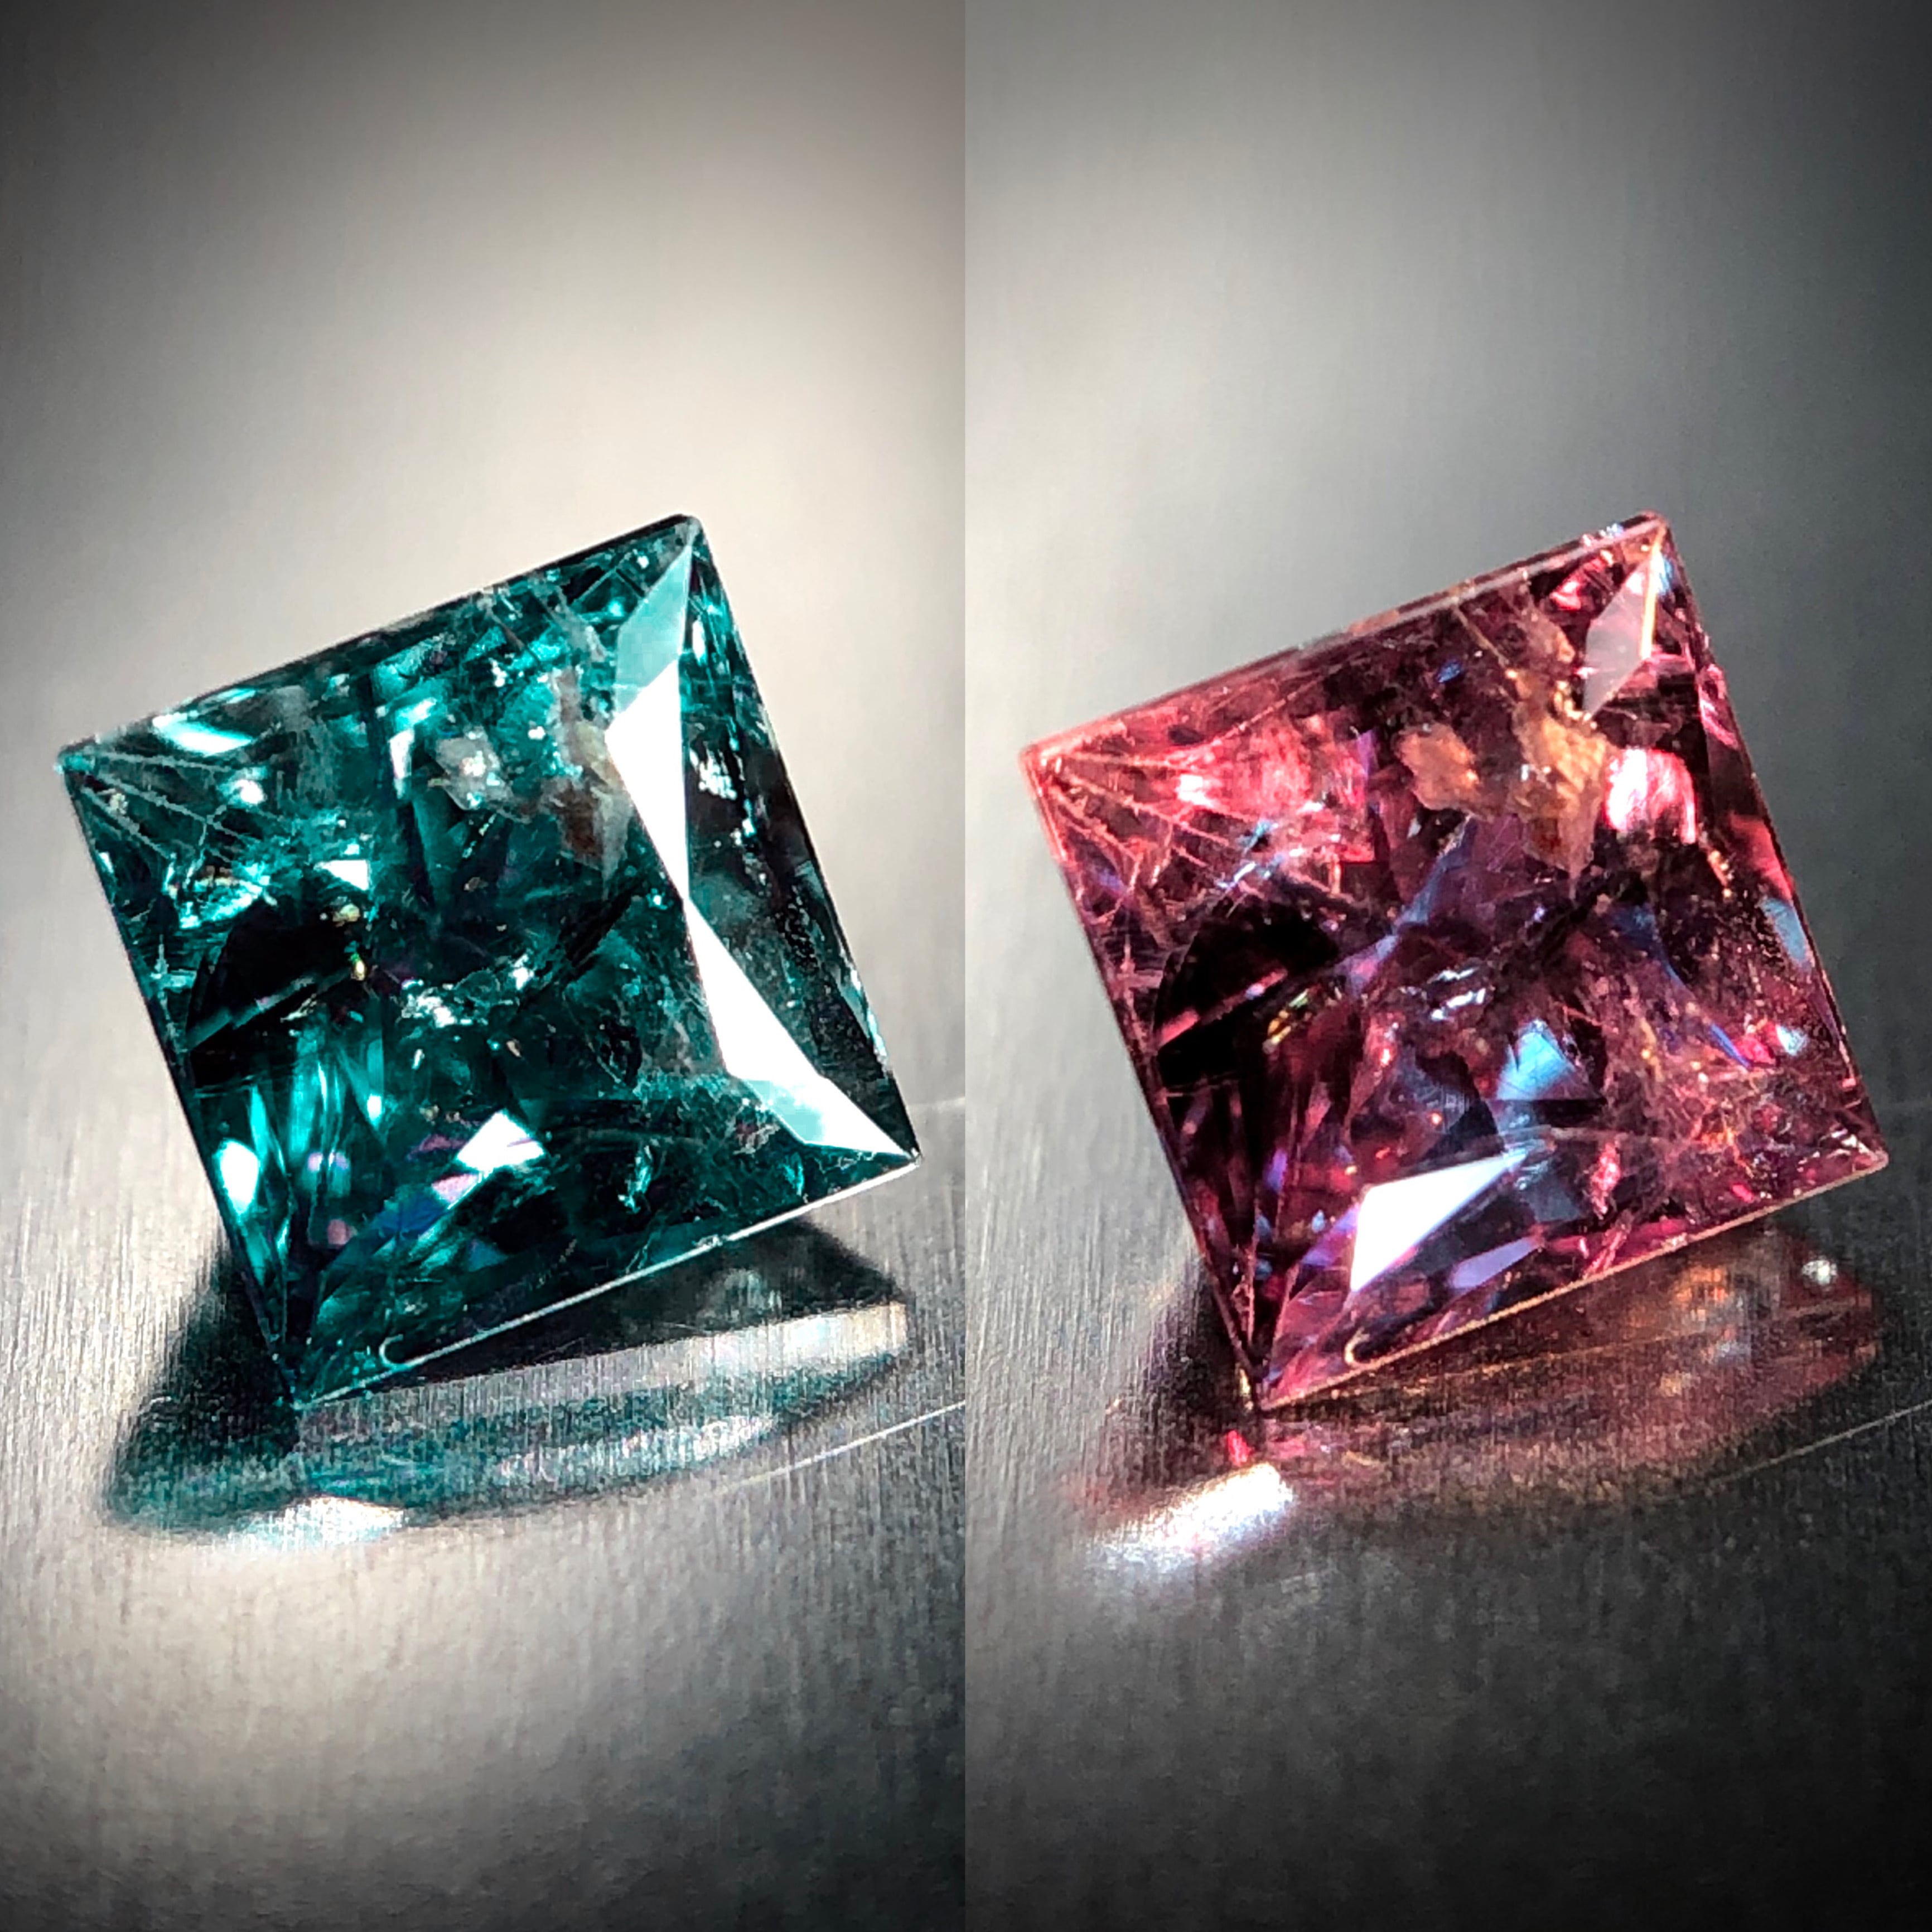 カラーチェンジの妖艶な魅力 0.32ct 天然アレキサンドライト | Frederick’s Gems&Jewelry powered by BASE